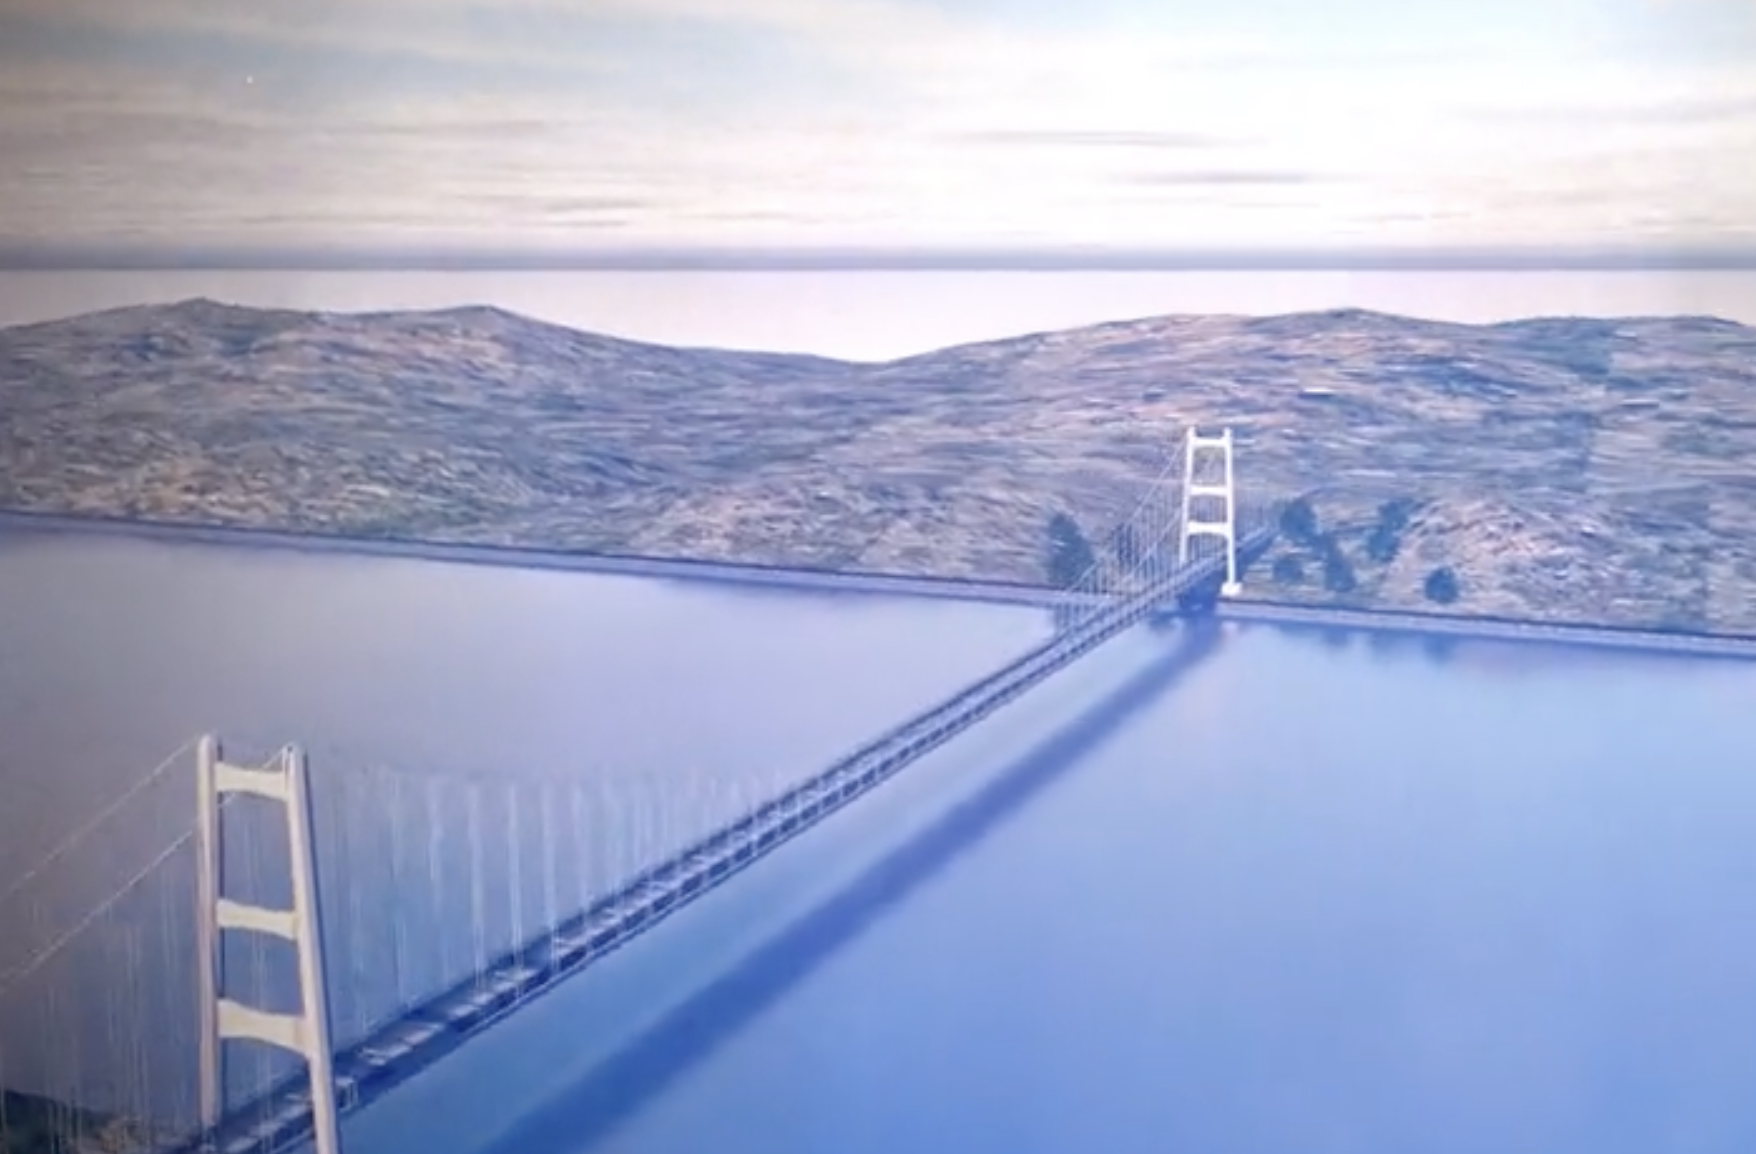 A Salvini il Ponte sullo Stretto piace, un video lo ricostruisce